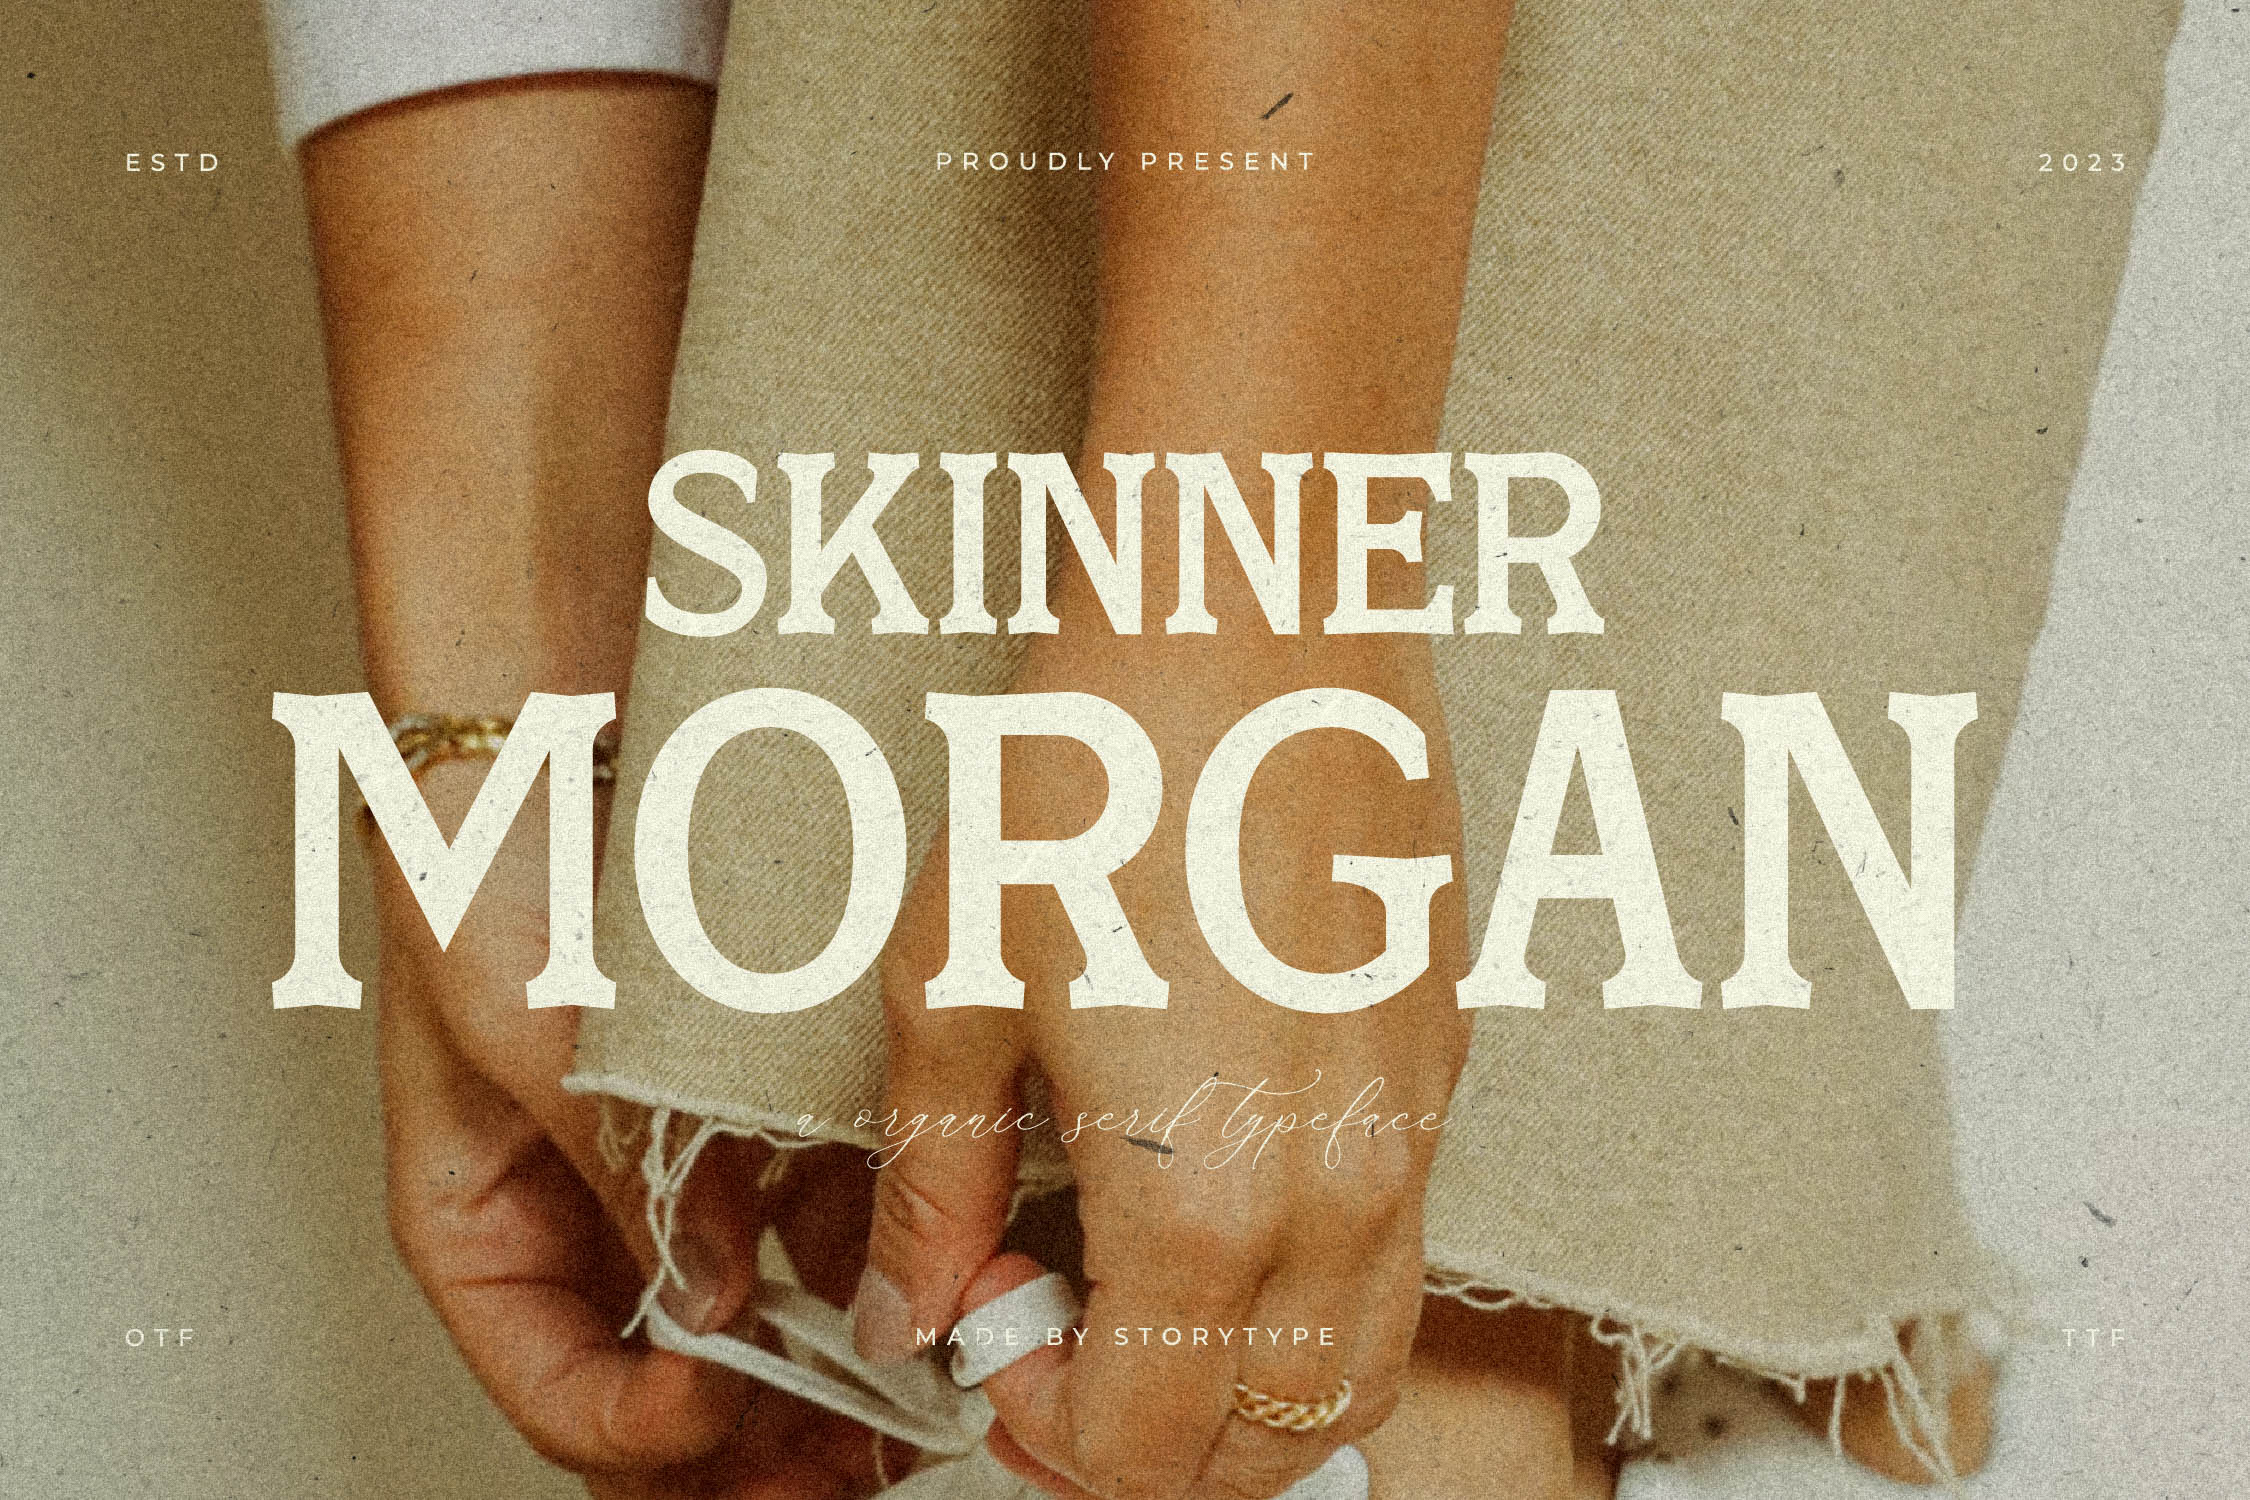 Skinner Morgan